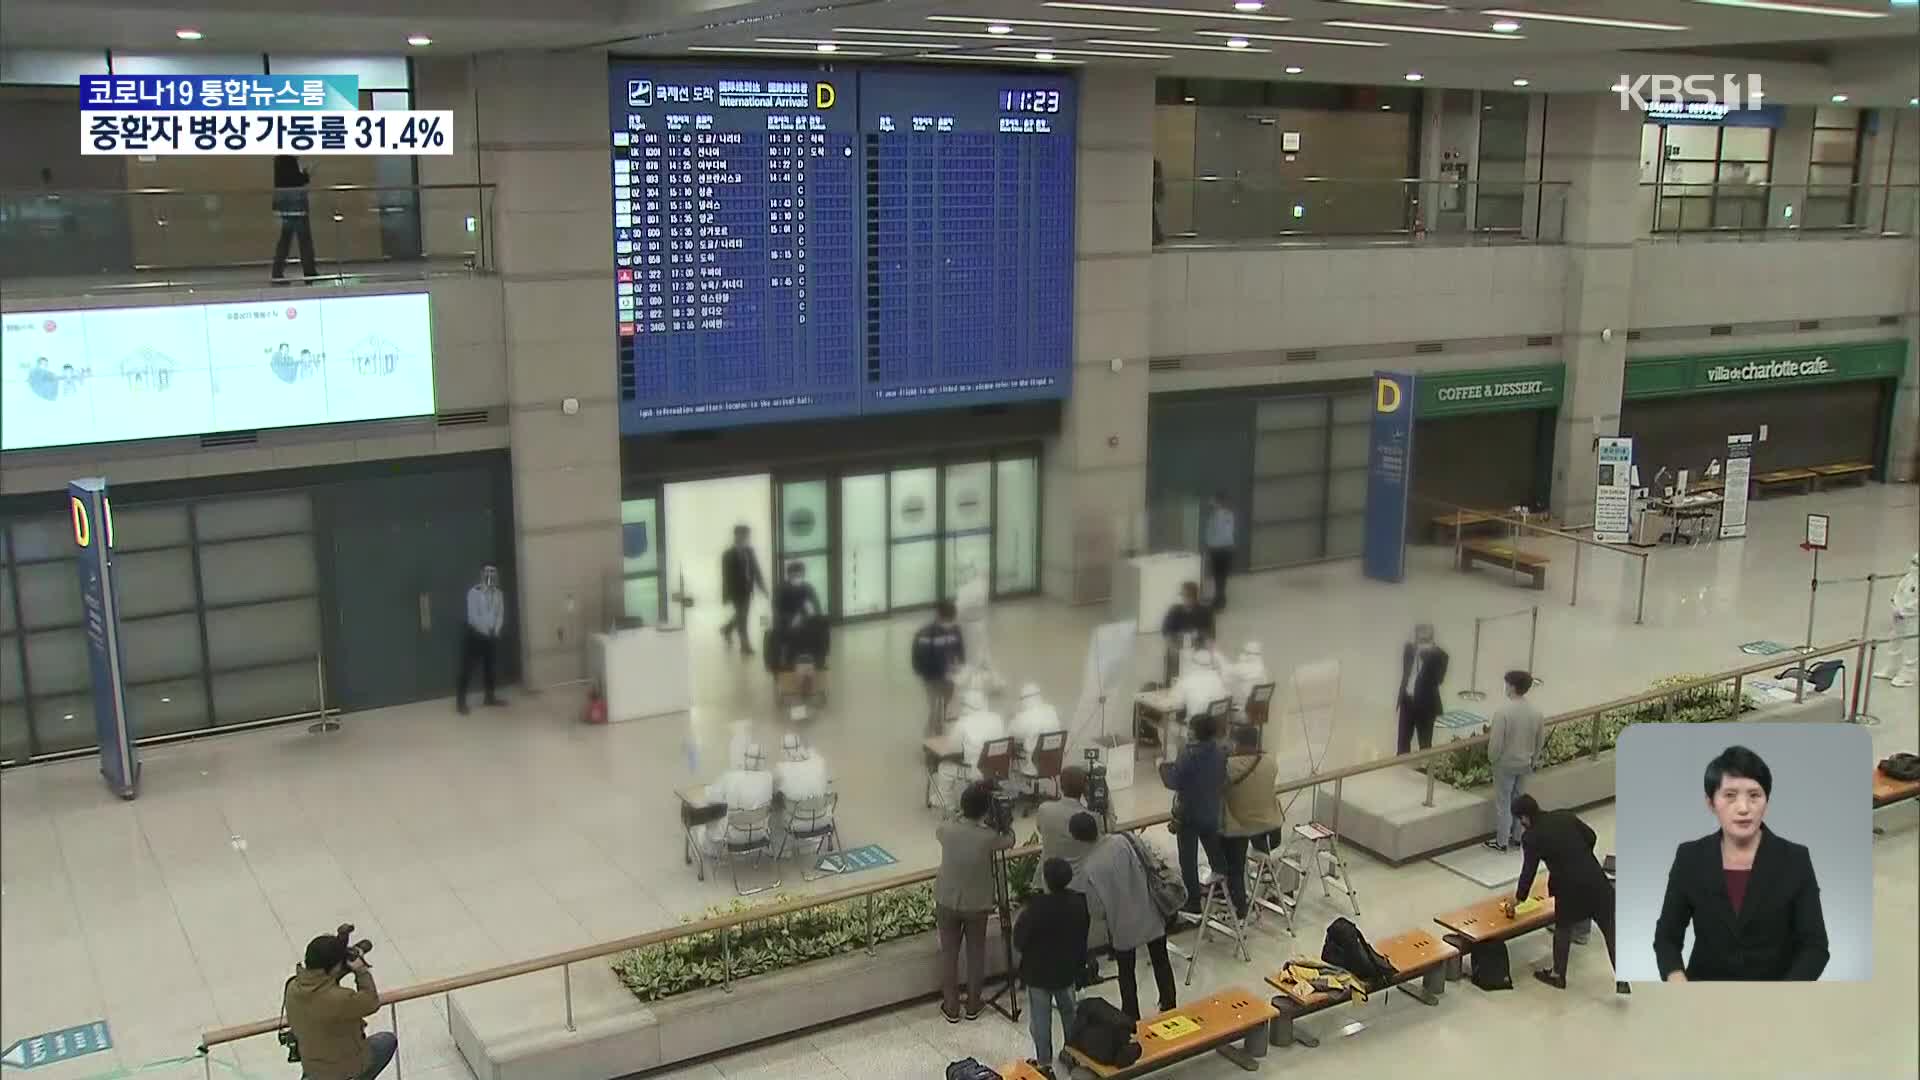 공항 이용객 3배 급증…해외 여행갔다 코로나 걸리면?